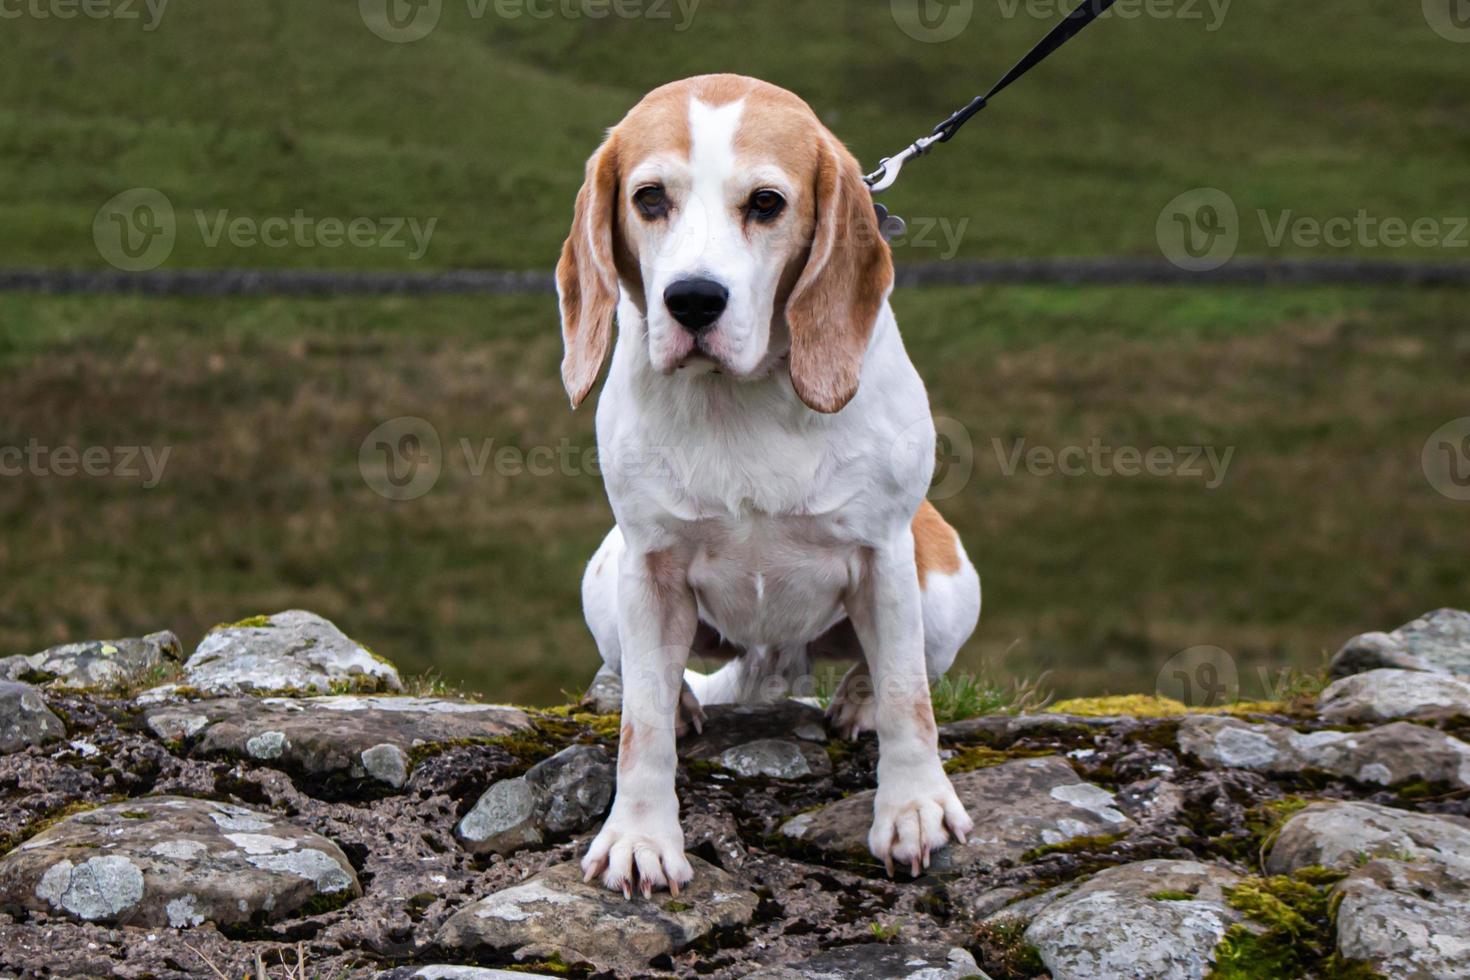 A Beagle dog photo